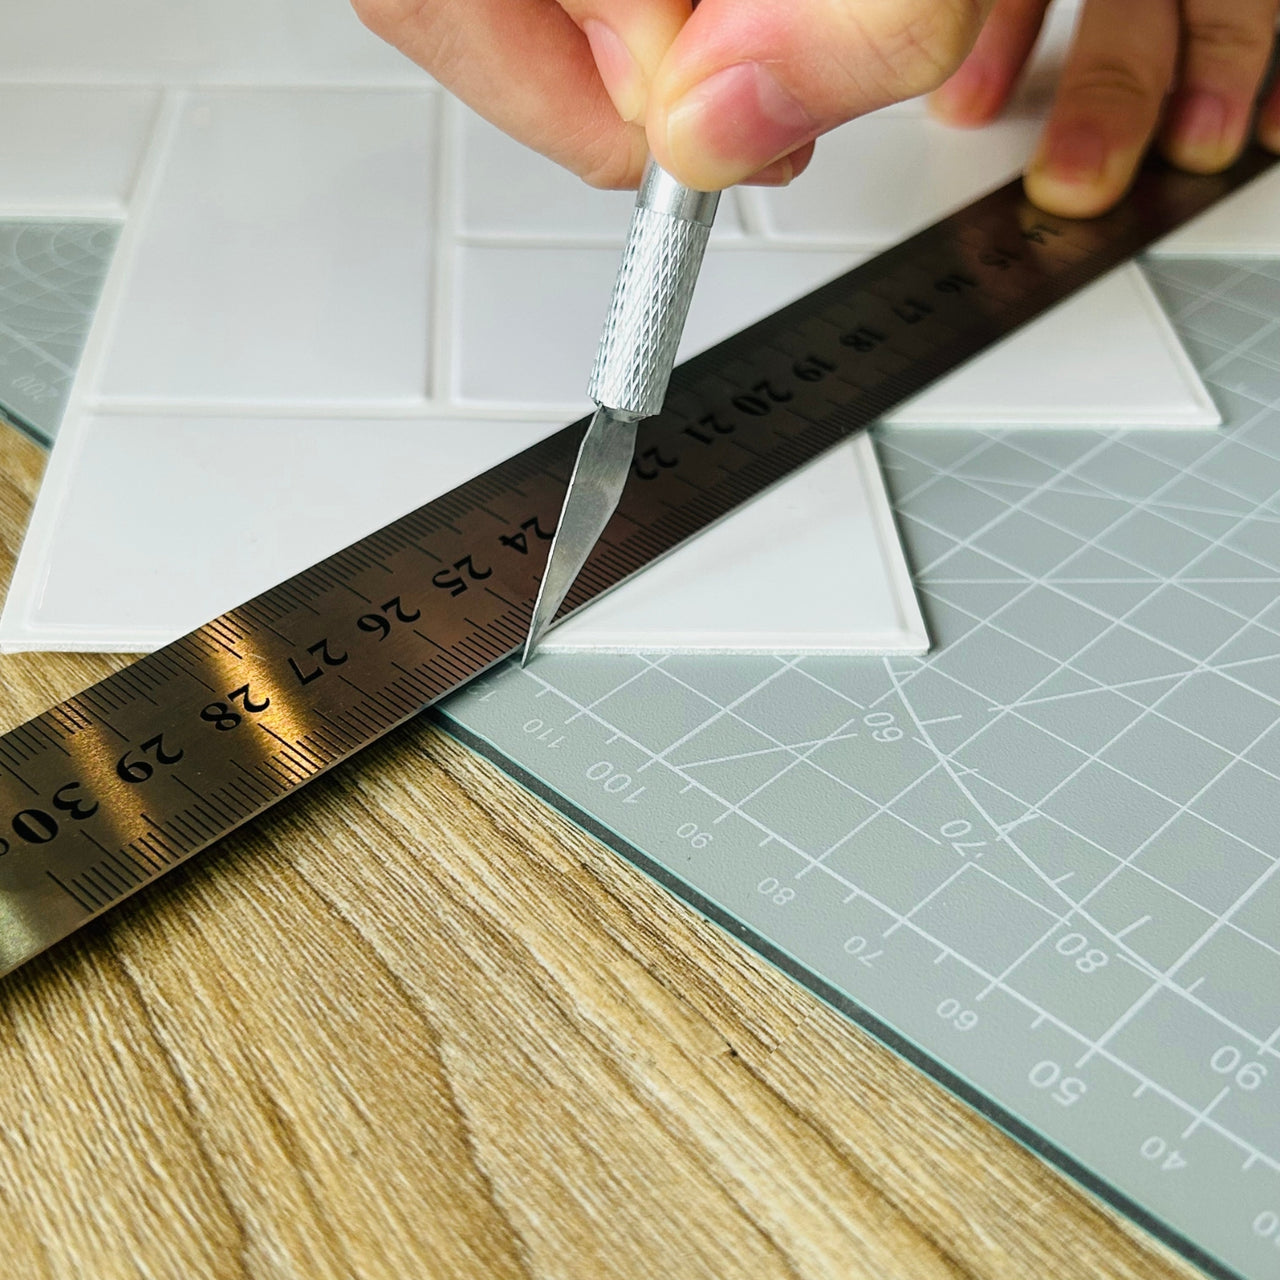 Metal ruler in stainless steel